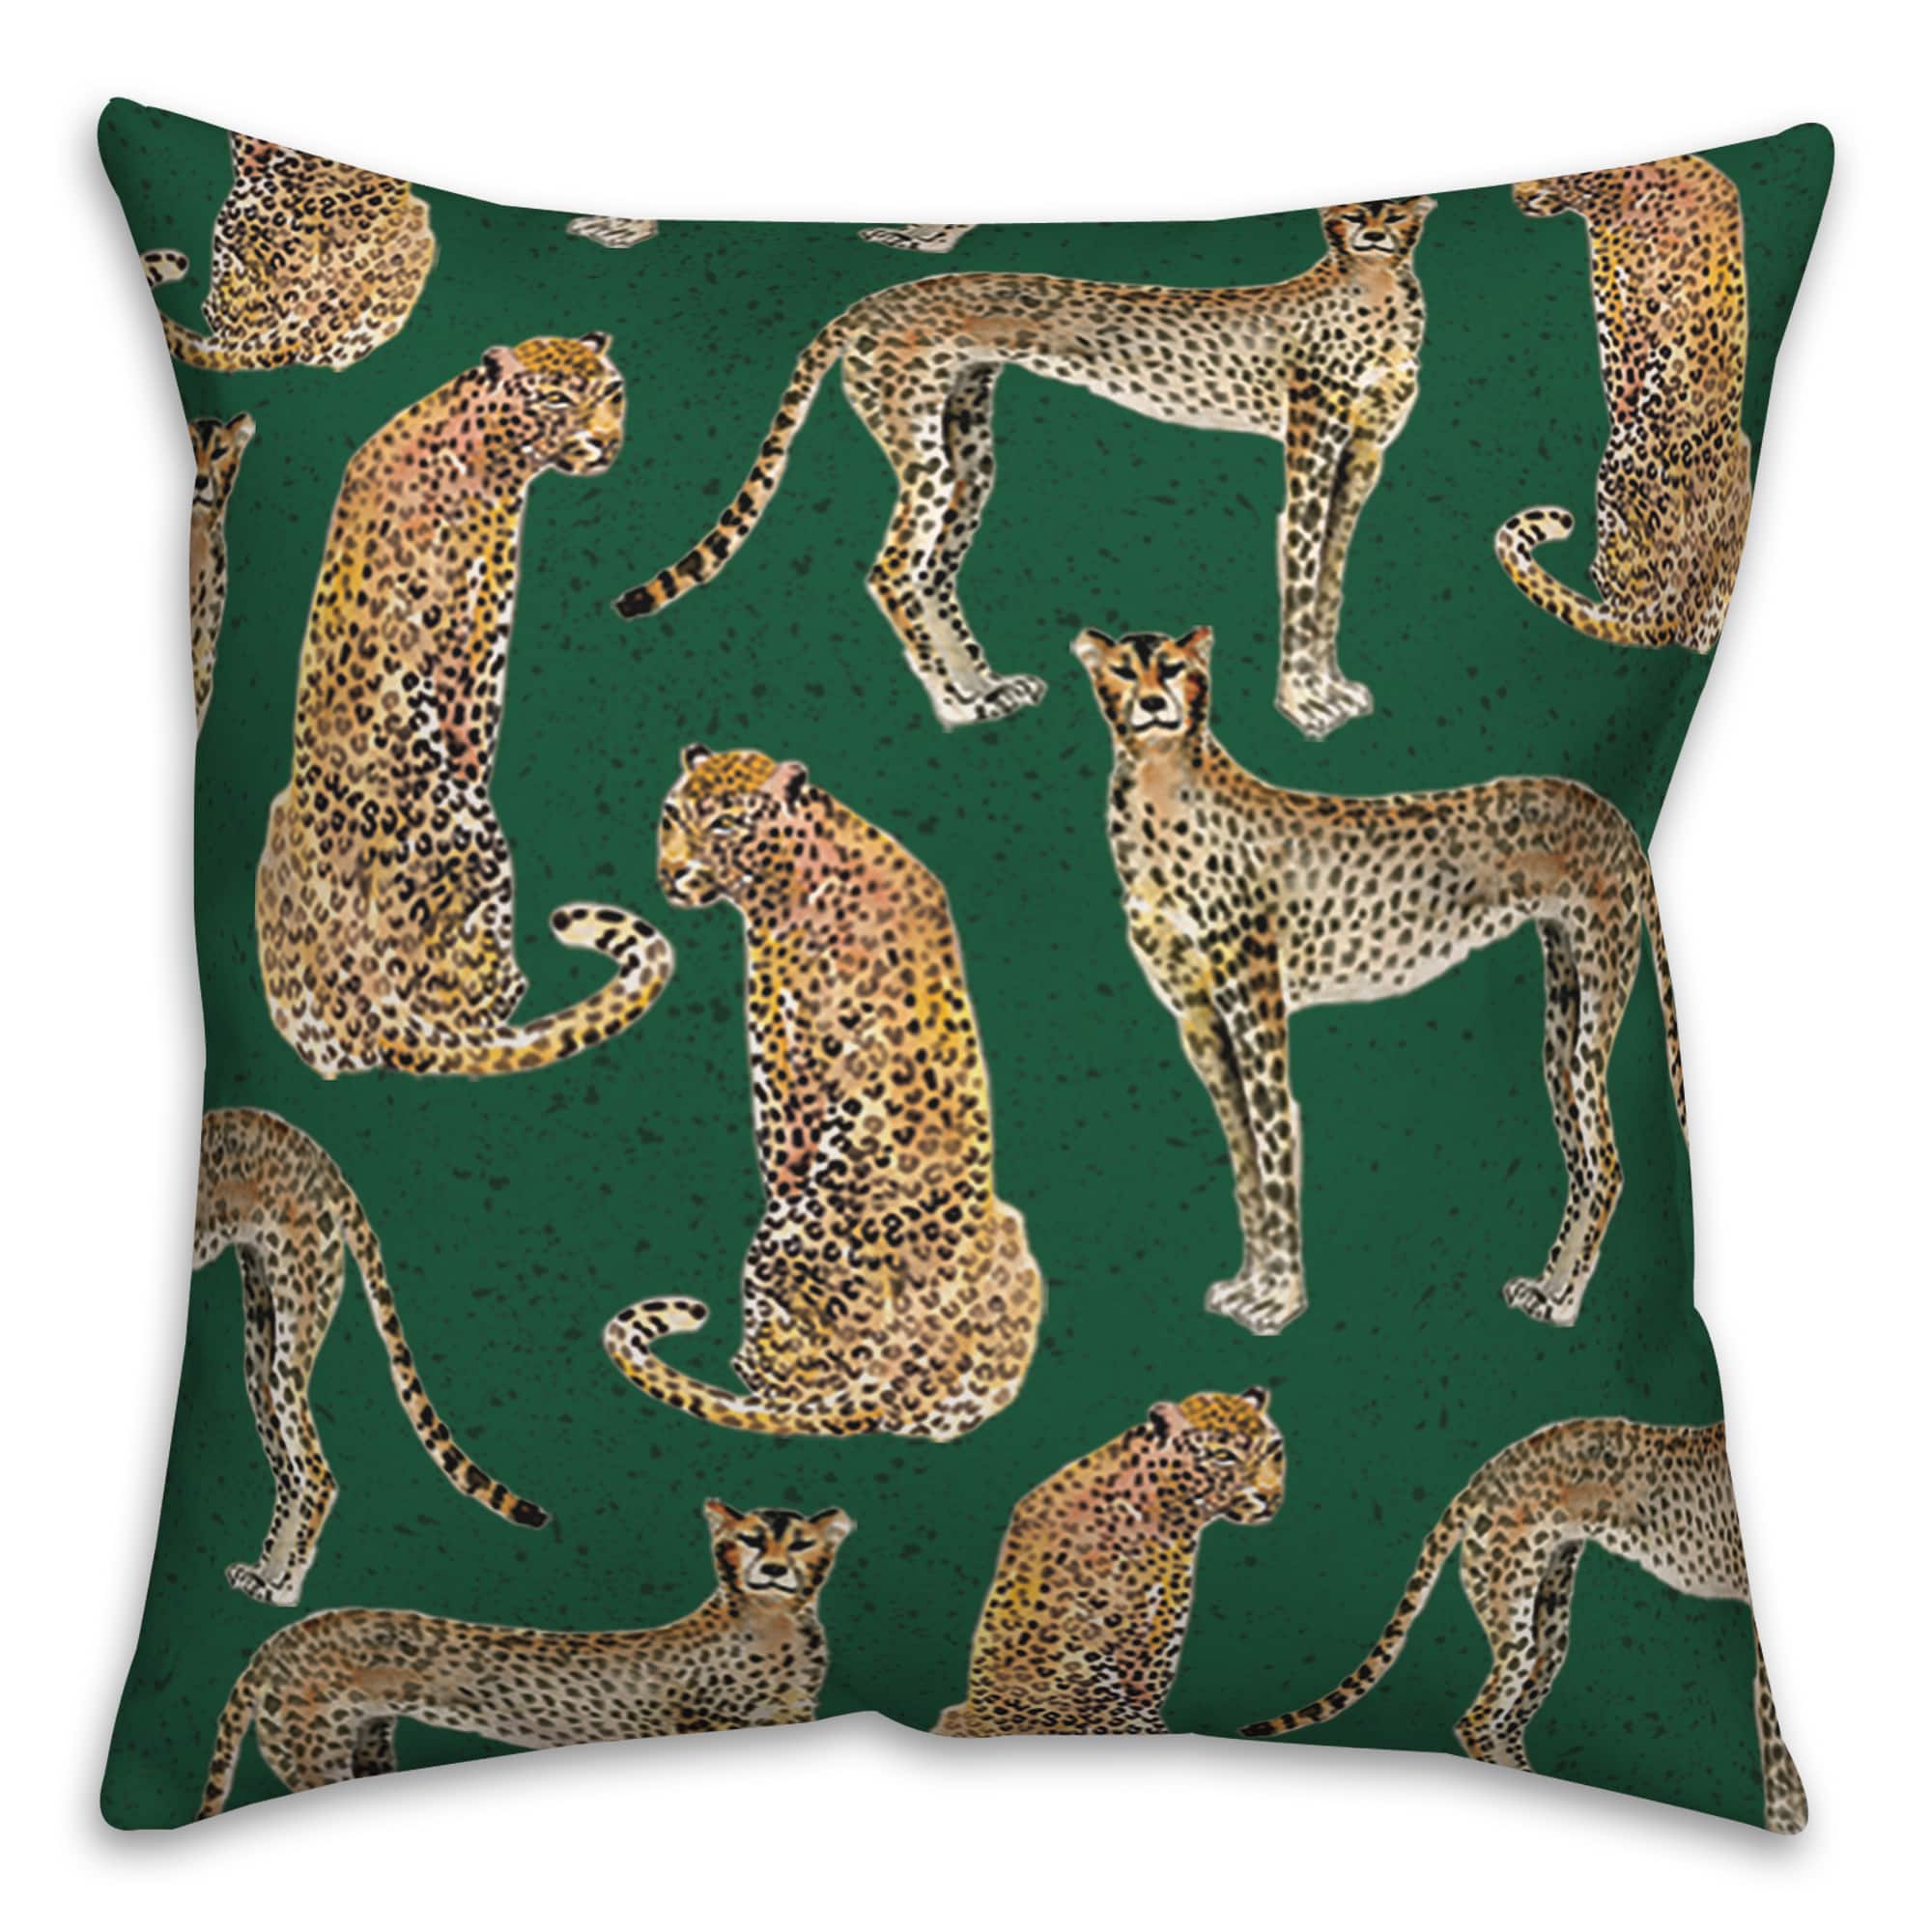 Cheetahs Indoor/Outdoor Throw Pillow